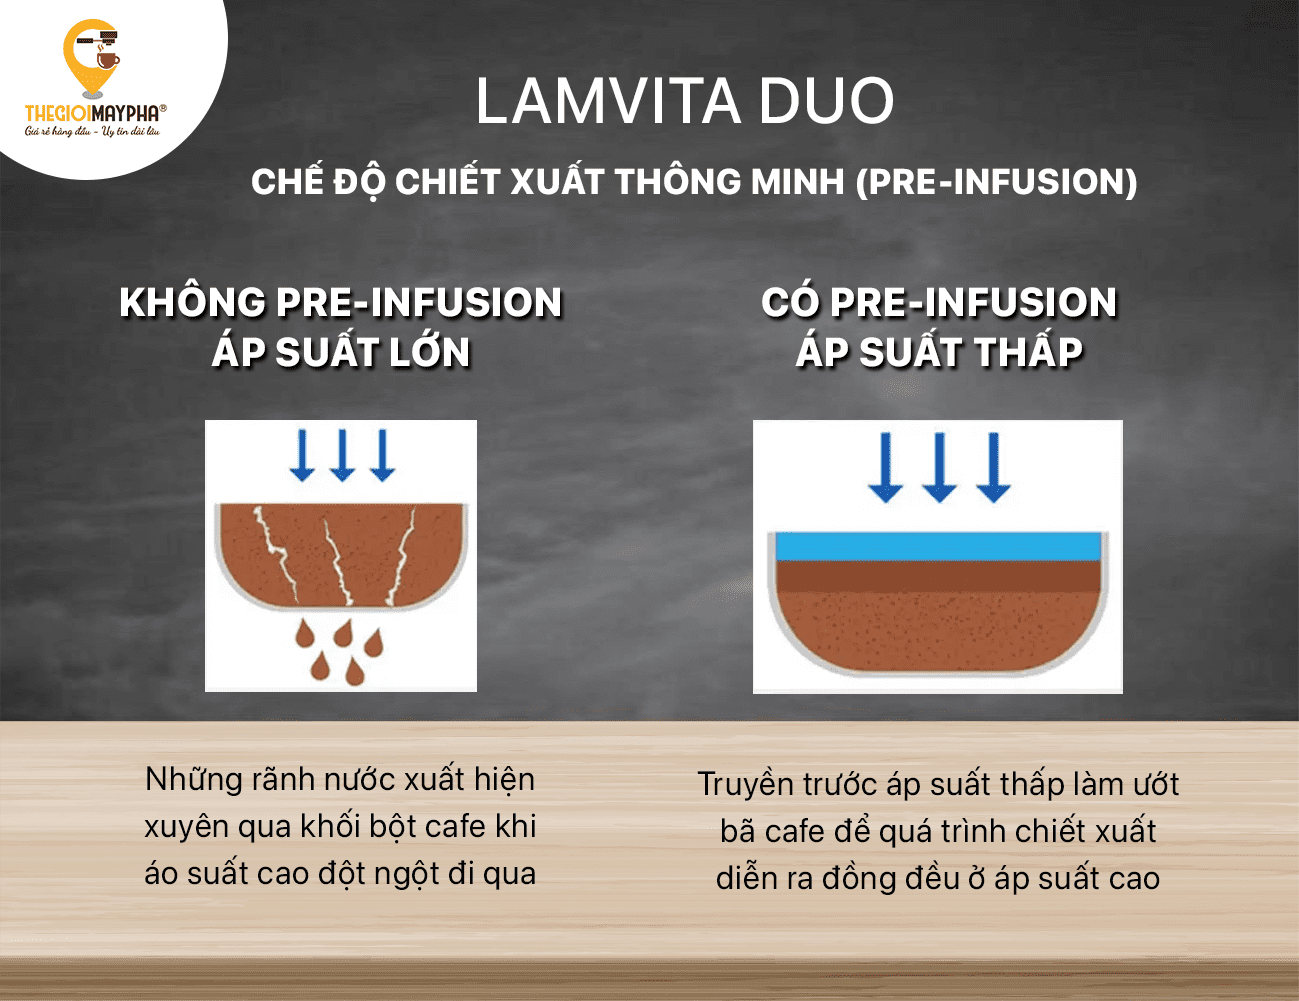 Máy pha cà phê Lamvita Duo